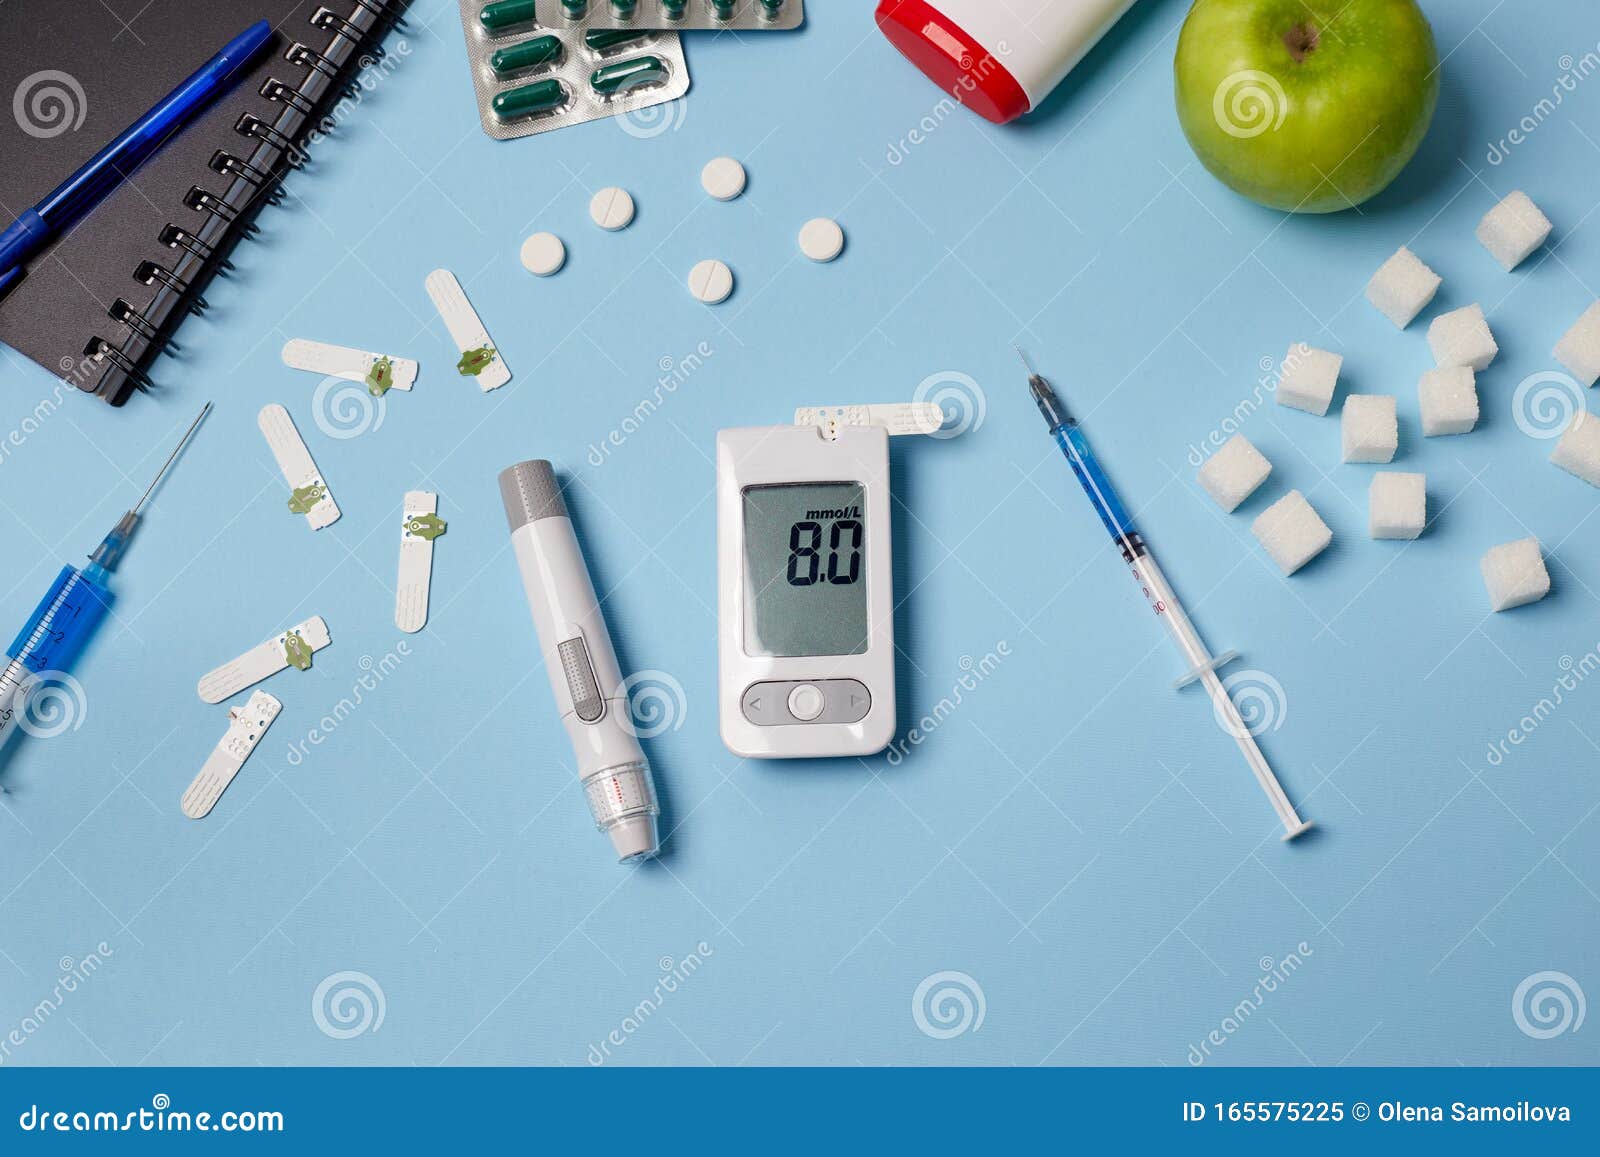 diabetic medicine online)